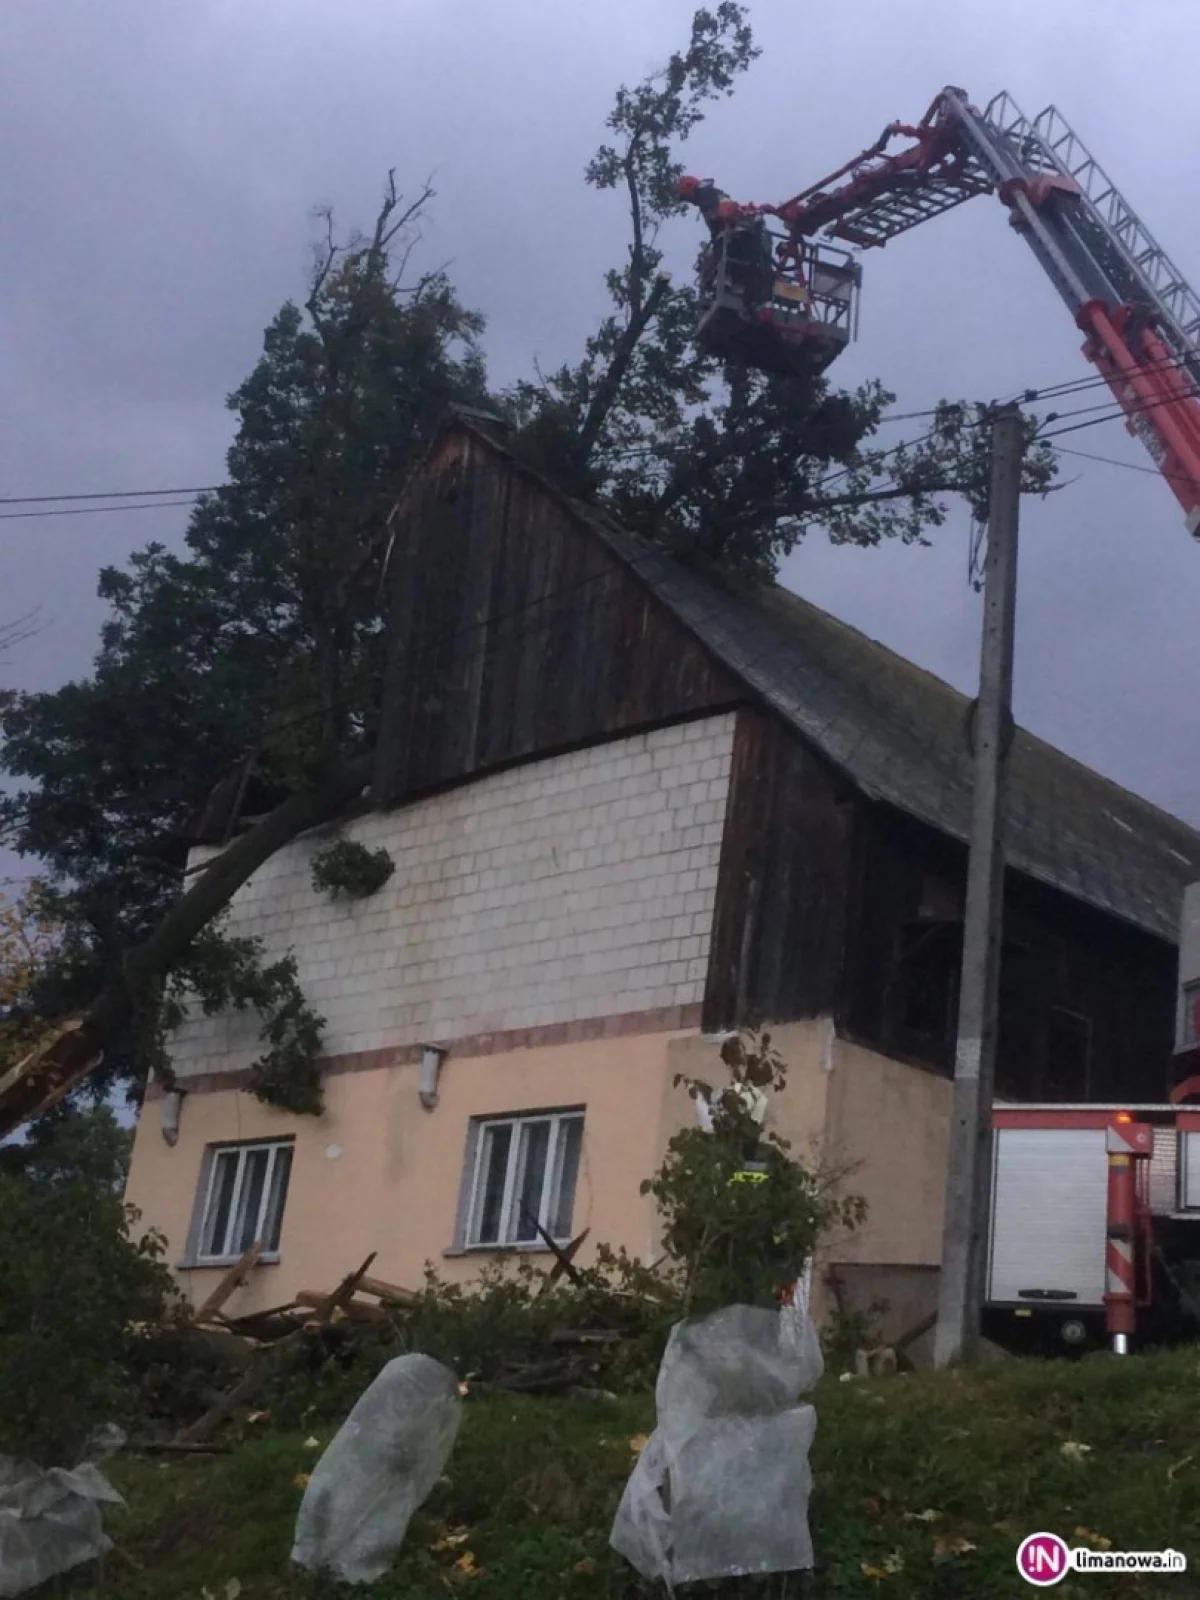 Liczba interwencji wzrosła do 47. Powalone drzewa, uszkodzone dachy, ściana budynku spadła na samochód